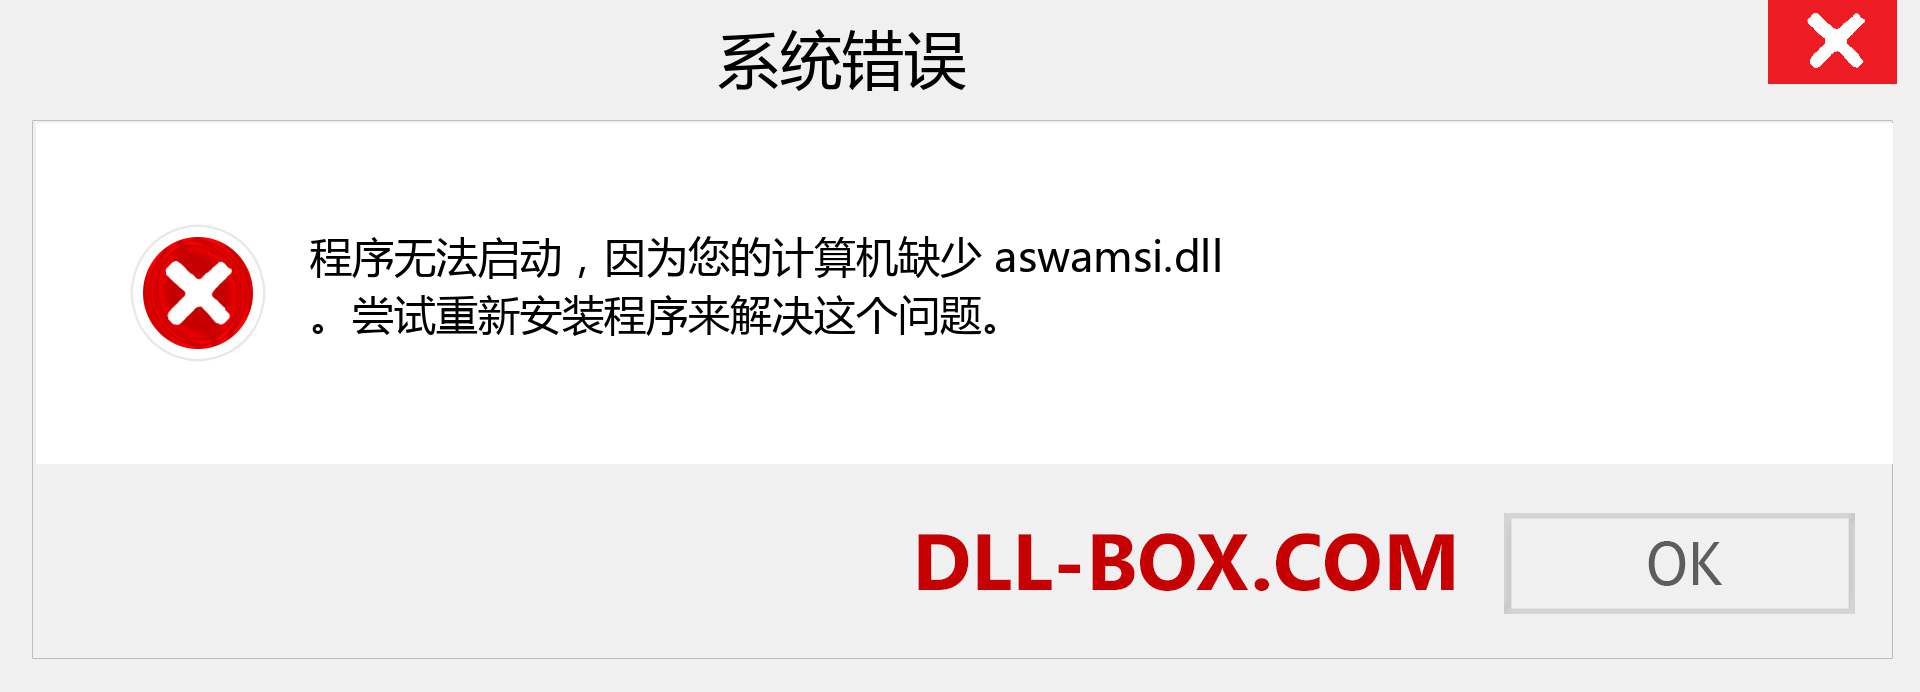 aswamsi.dll 文件丢失？。 适用于 Windows 7、8、10 的下载 - 修复 Windows、照片、图像上的 aswamsi dll 丢失错误